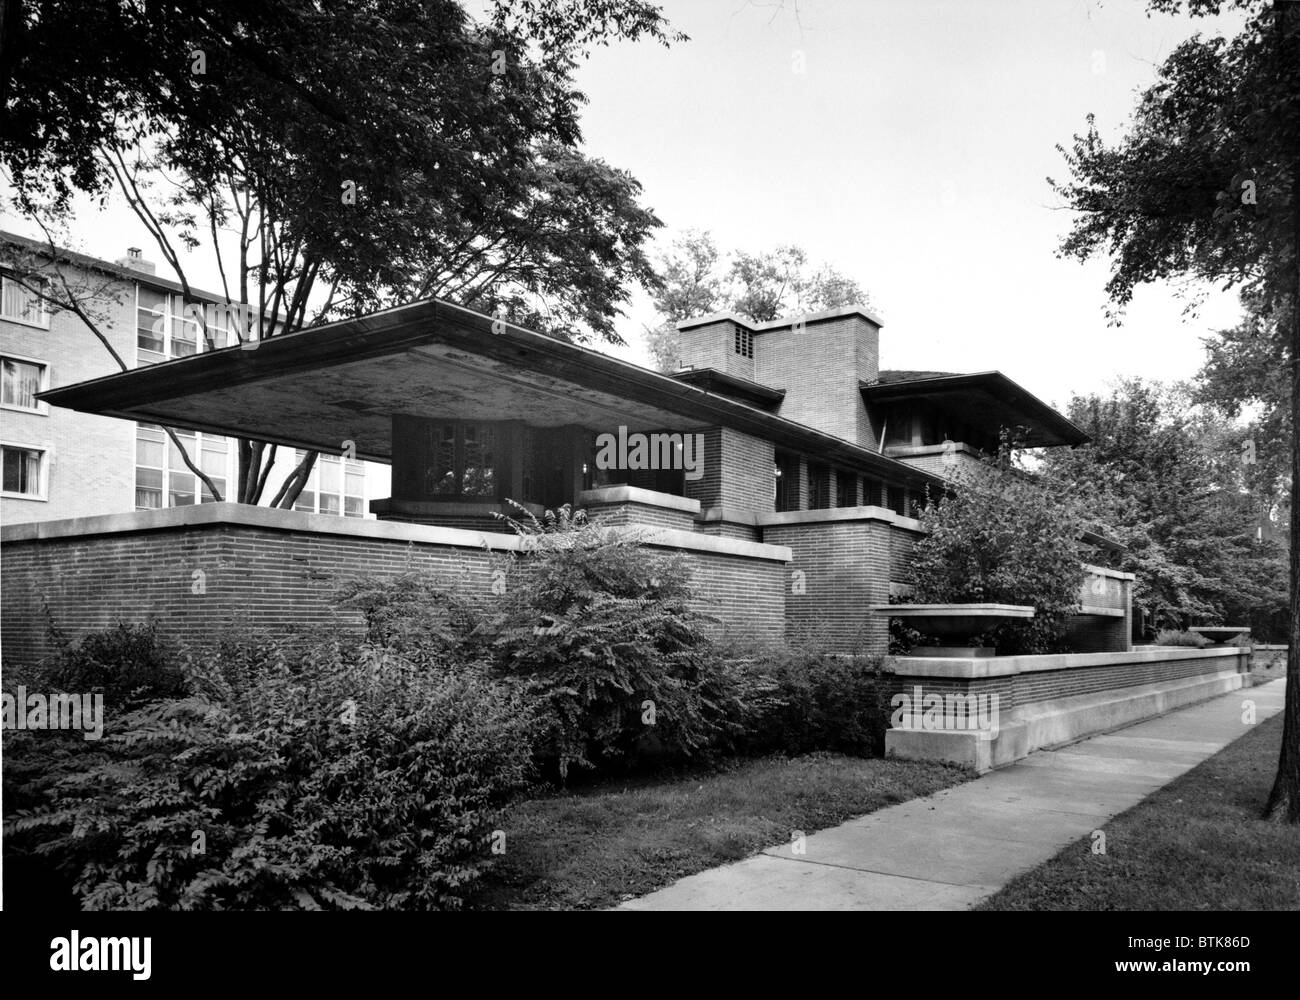 Frank Lloyd Wright utilizzato acciaio strutturale cornici per sostenere il tetto a sbalzo di Robie House a Chicago, 1910. Anche in acciaio gli ha permesso di creare ampi spazi interni che scorre interni che simboleggia la trasparenza delle praterie americane. Foto Stock